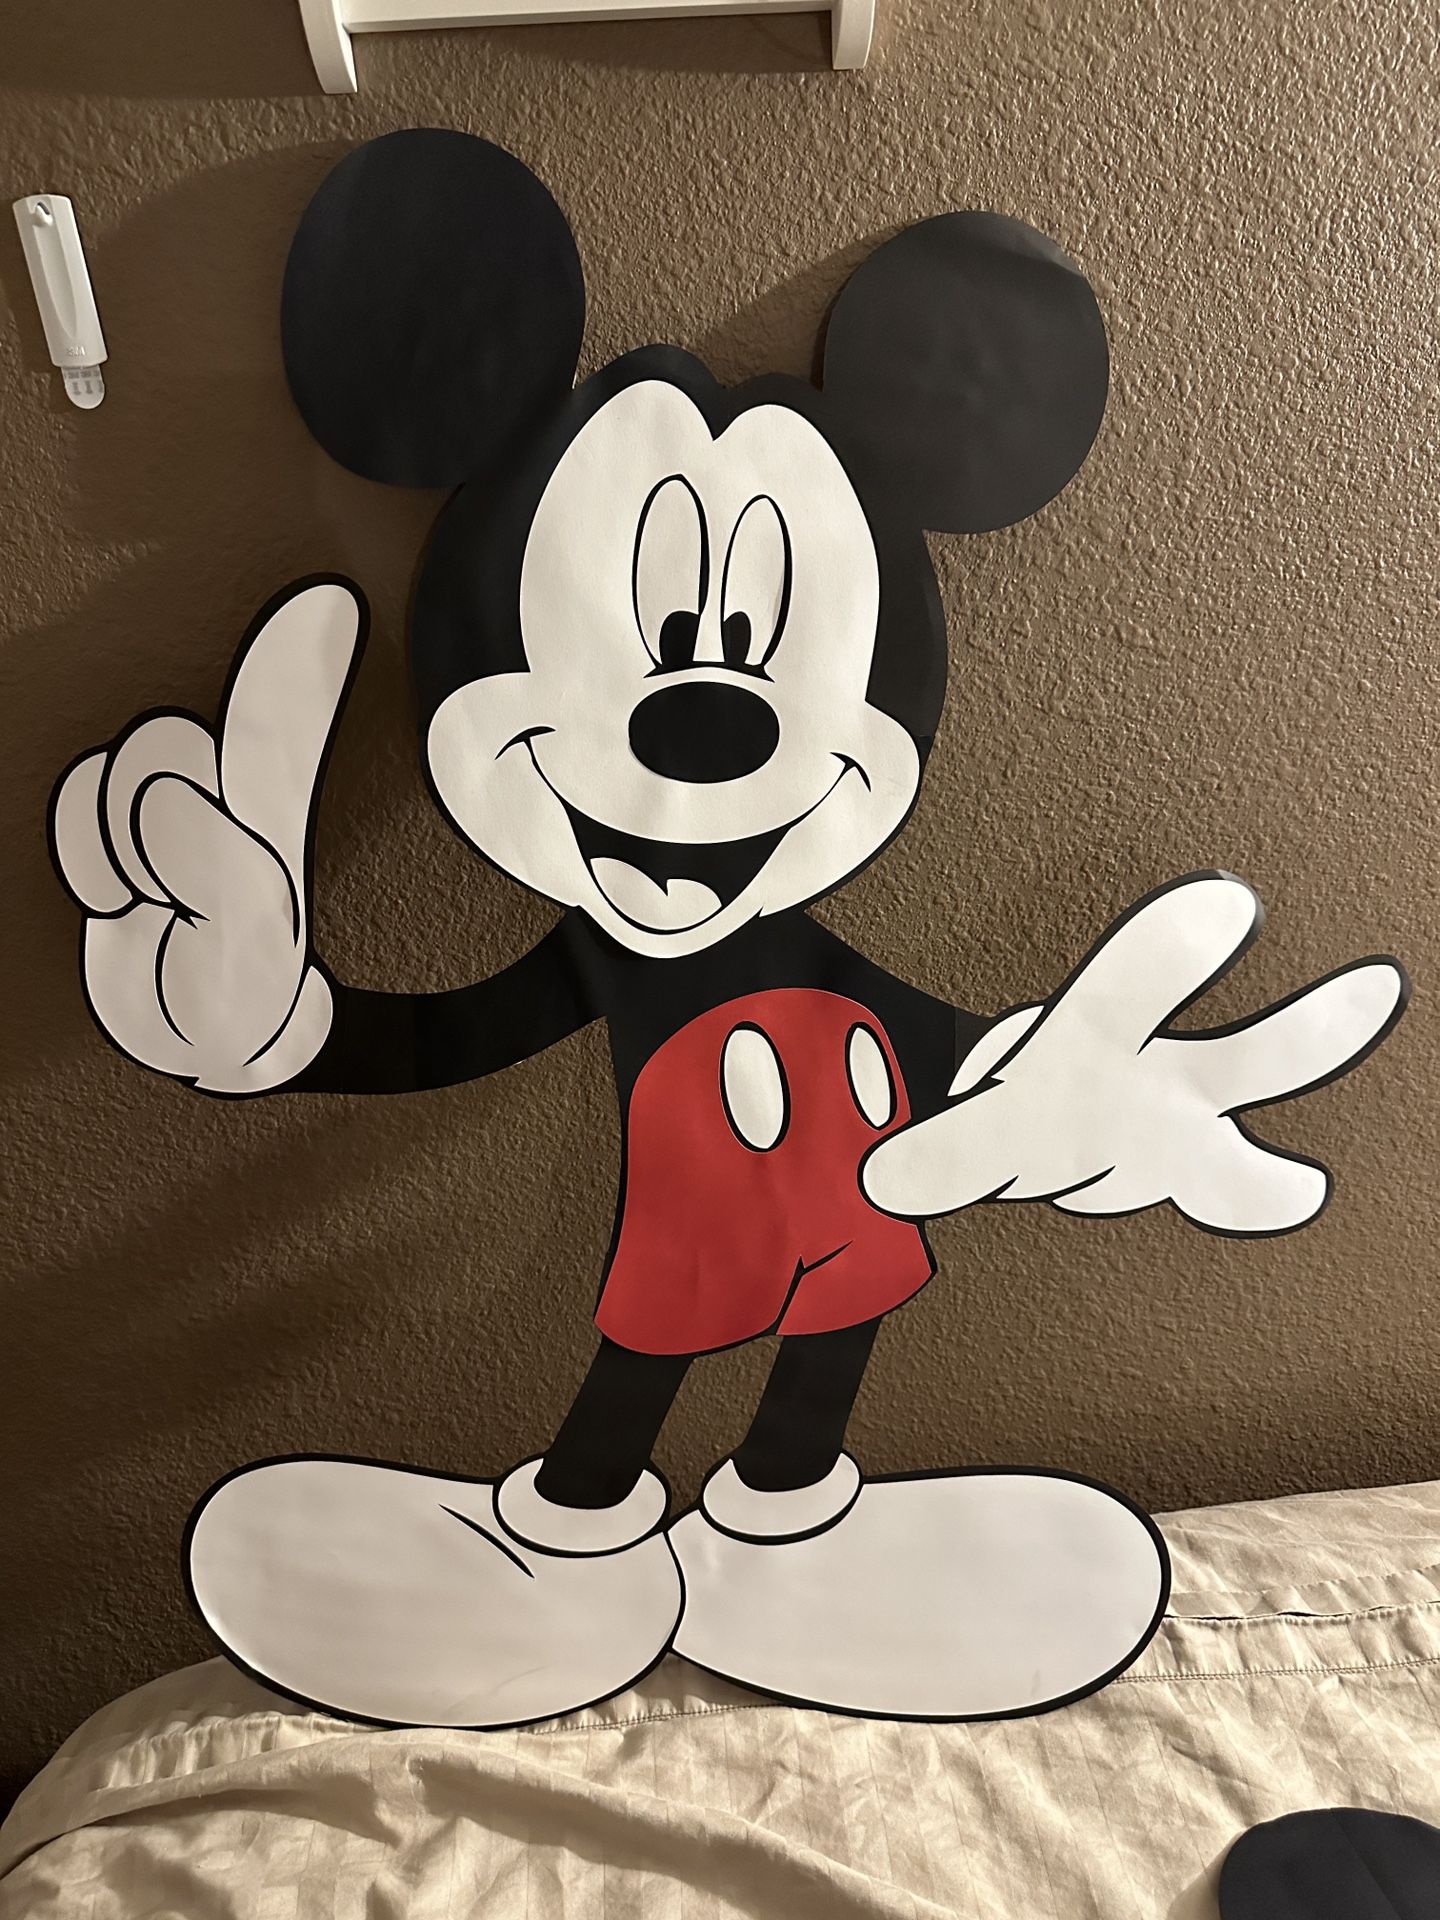 Mickey Mouse foam board cutouts